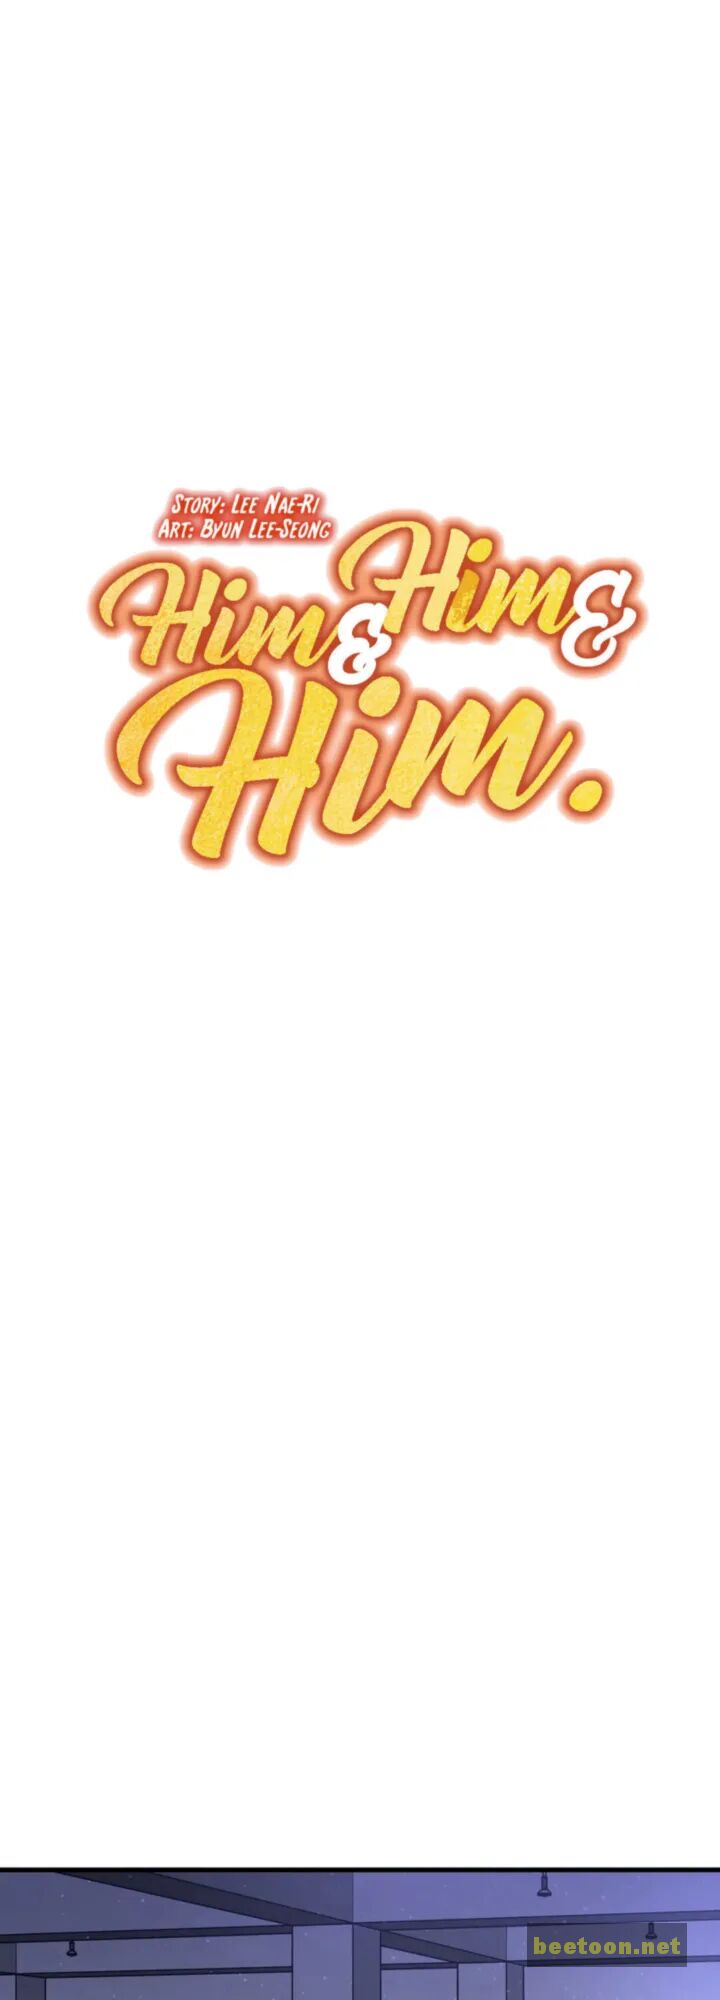 Him & Him & Him Chapter 17.4 - MyToon.net